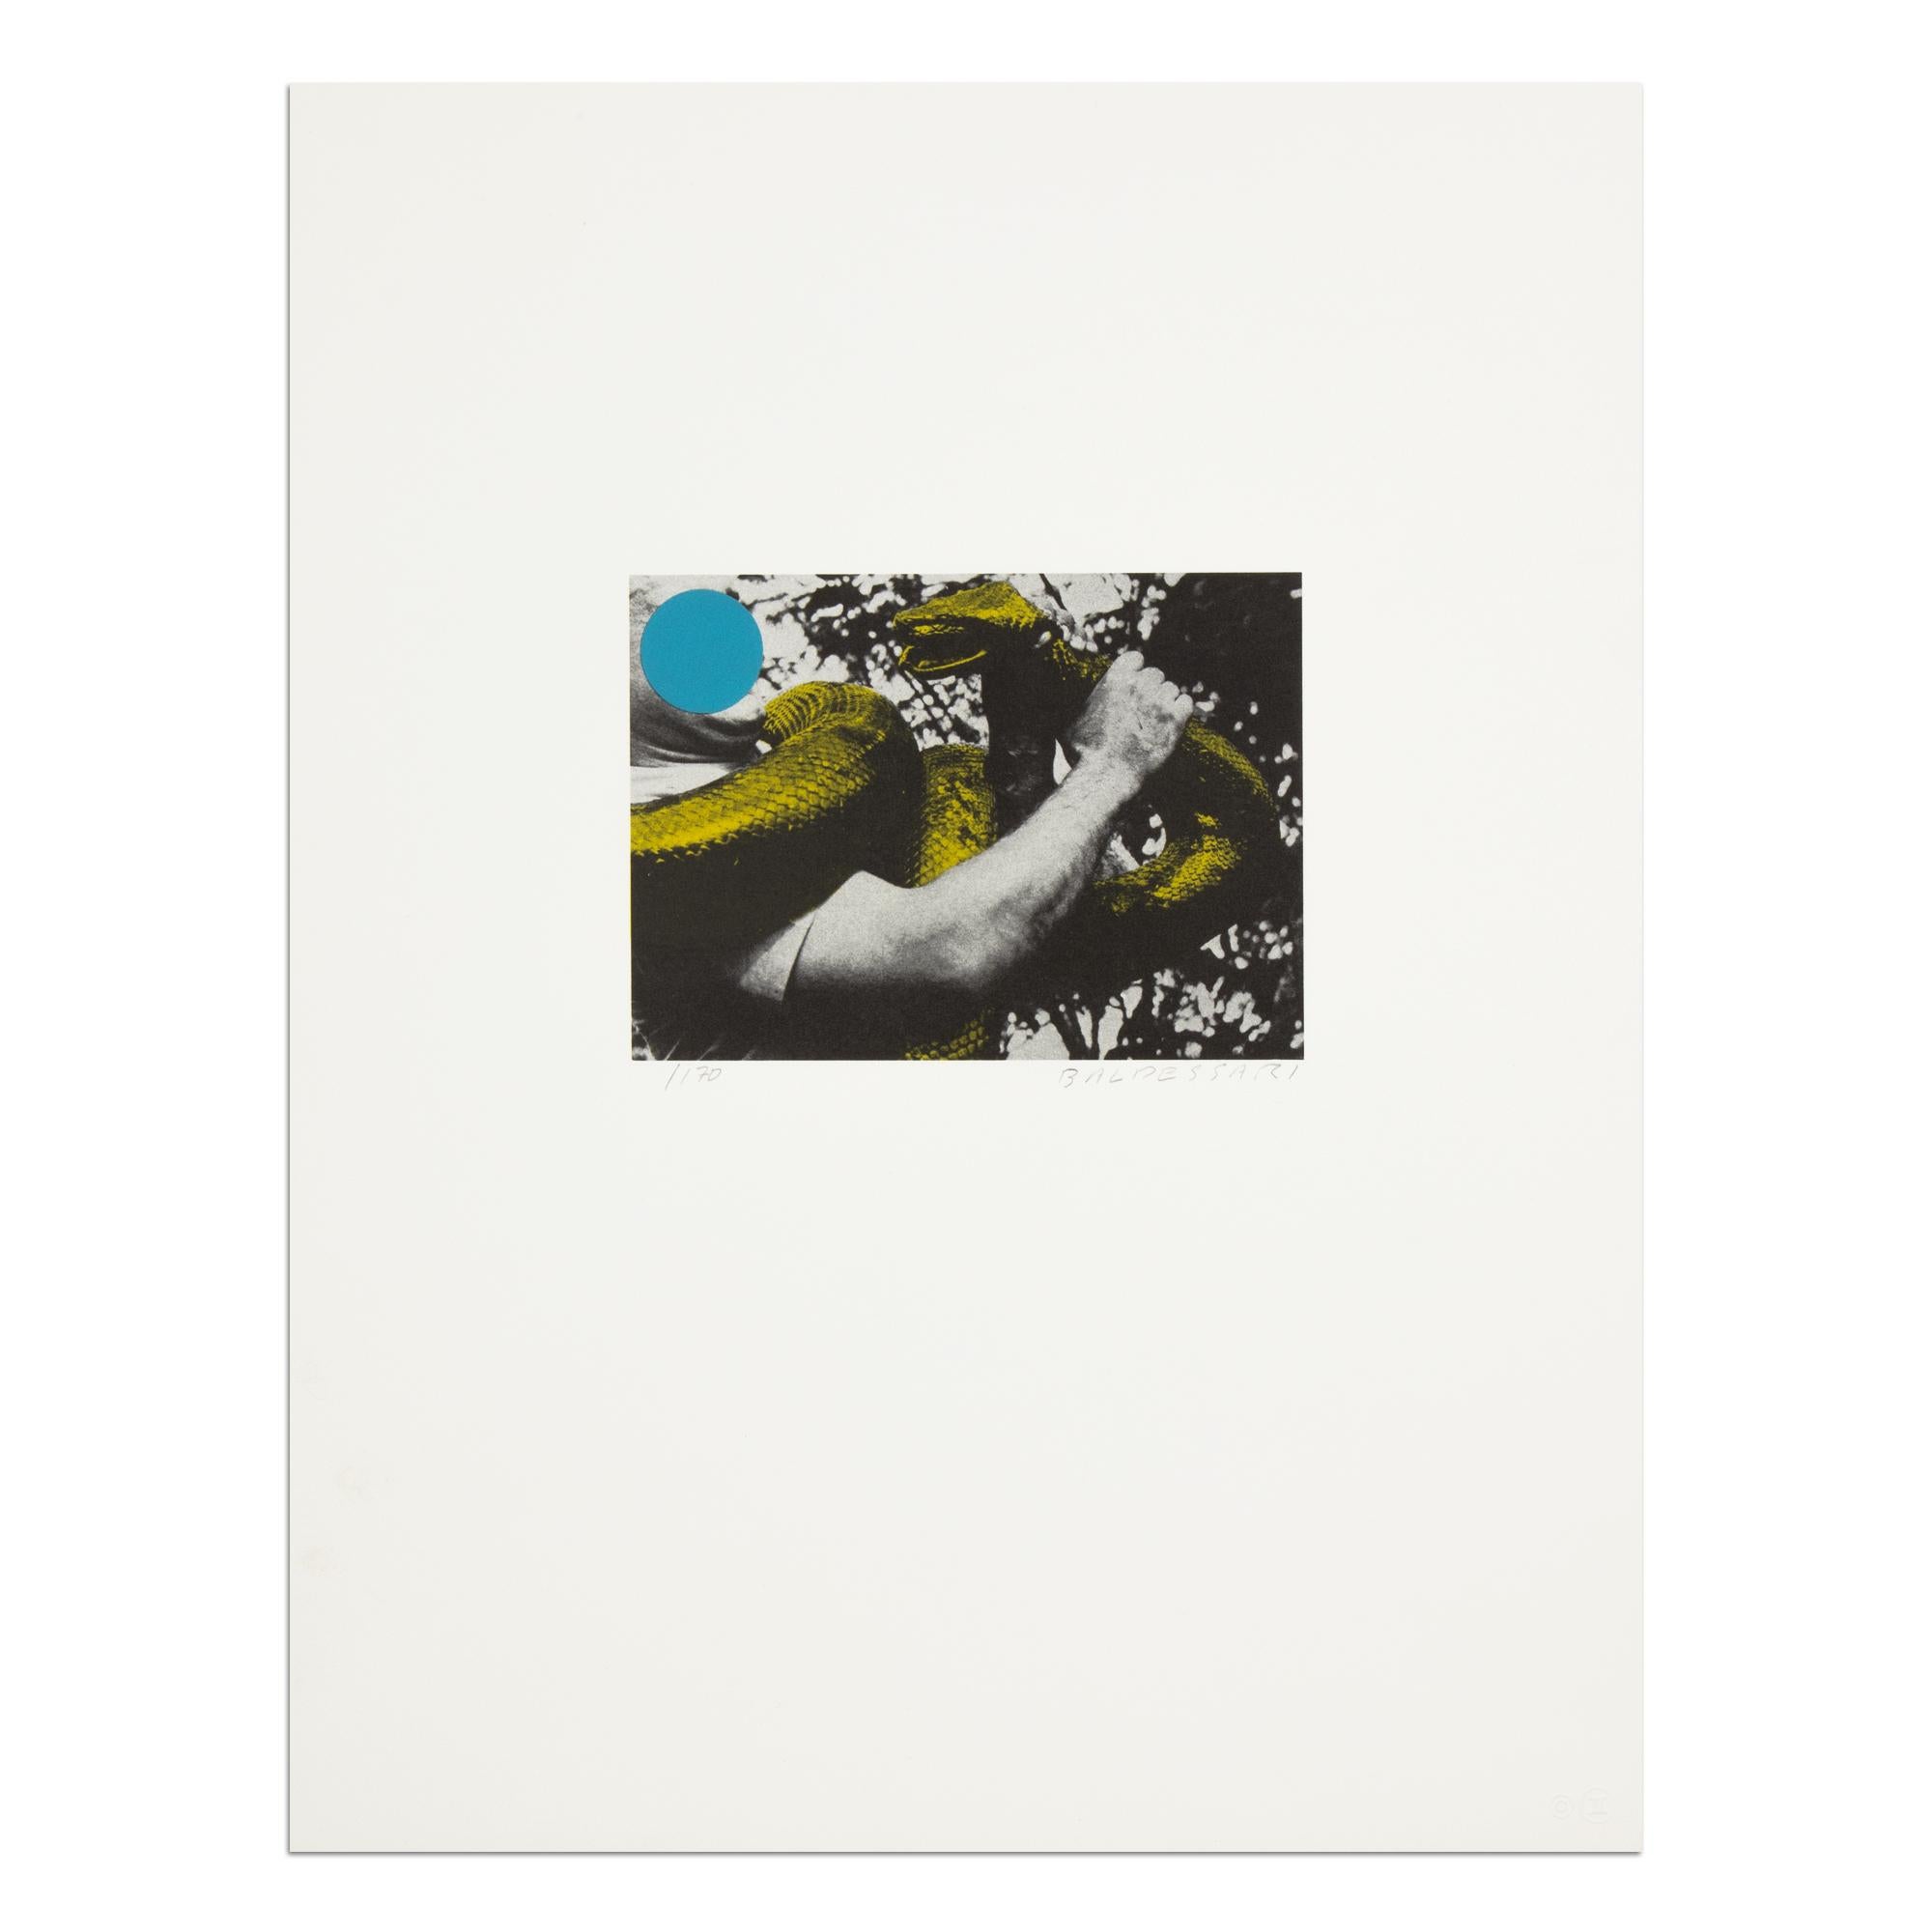 John Baldessari (Amerikaner, 1931-2020)
Mann mit Schlange (blau und gelb), 1990
Medium: Farblithographie, auf Velinpapier
Abmessungen: 45,7 x 35,5 cm (18 x 14 Zoll)
Auflage: 170 Stück: Handsigniert und mit Bleistift nummeriert
Gesamtkatalog: